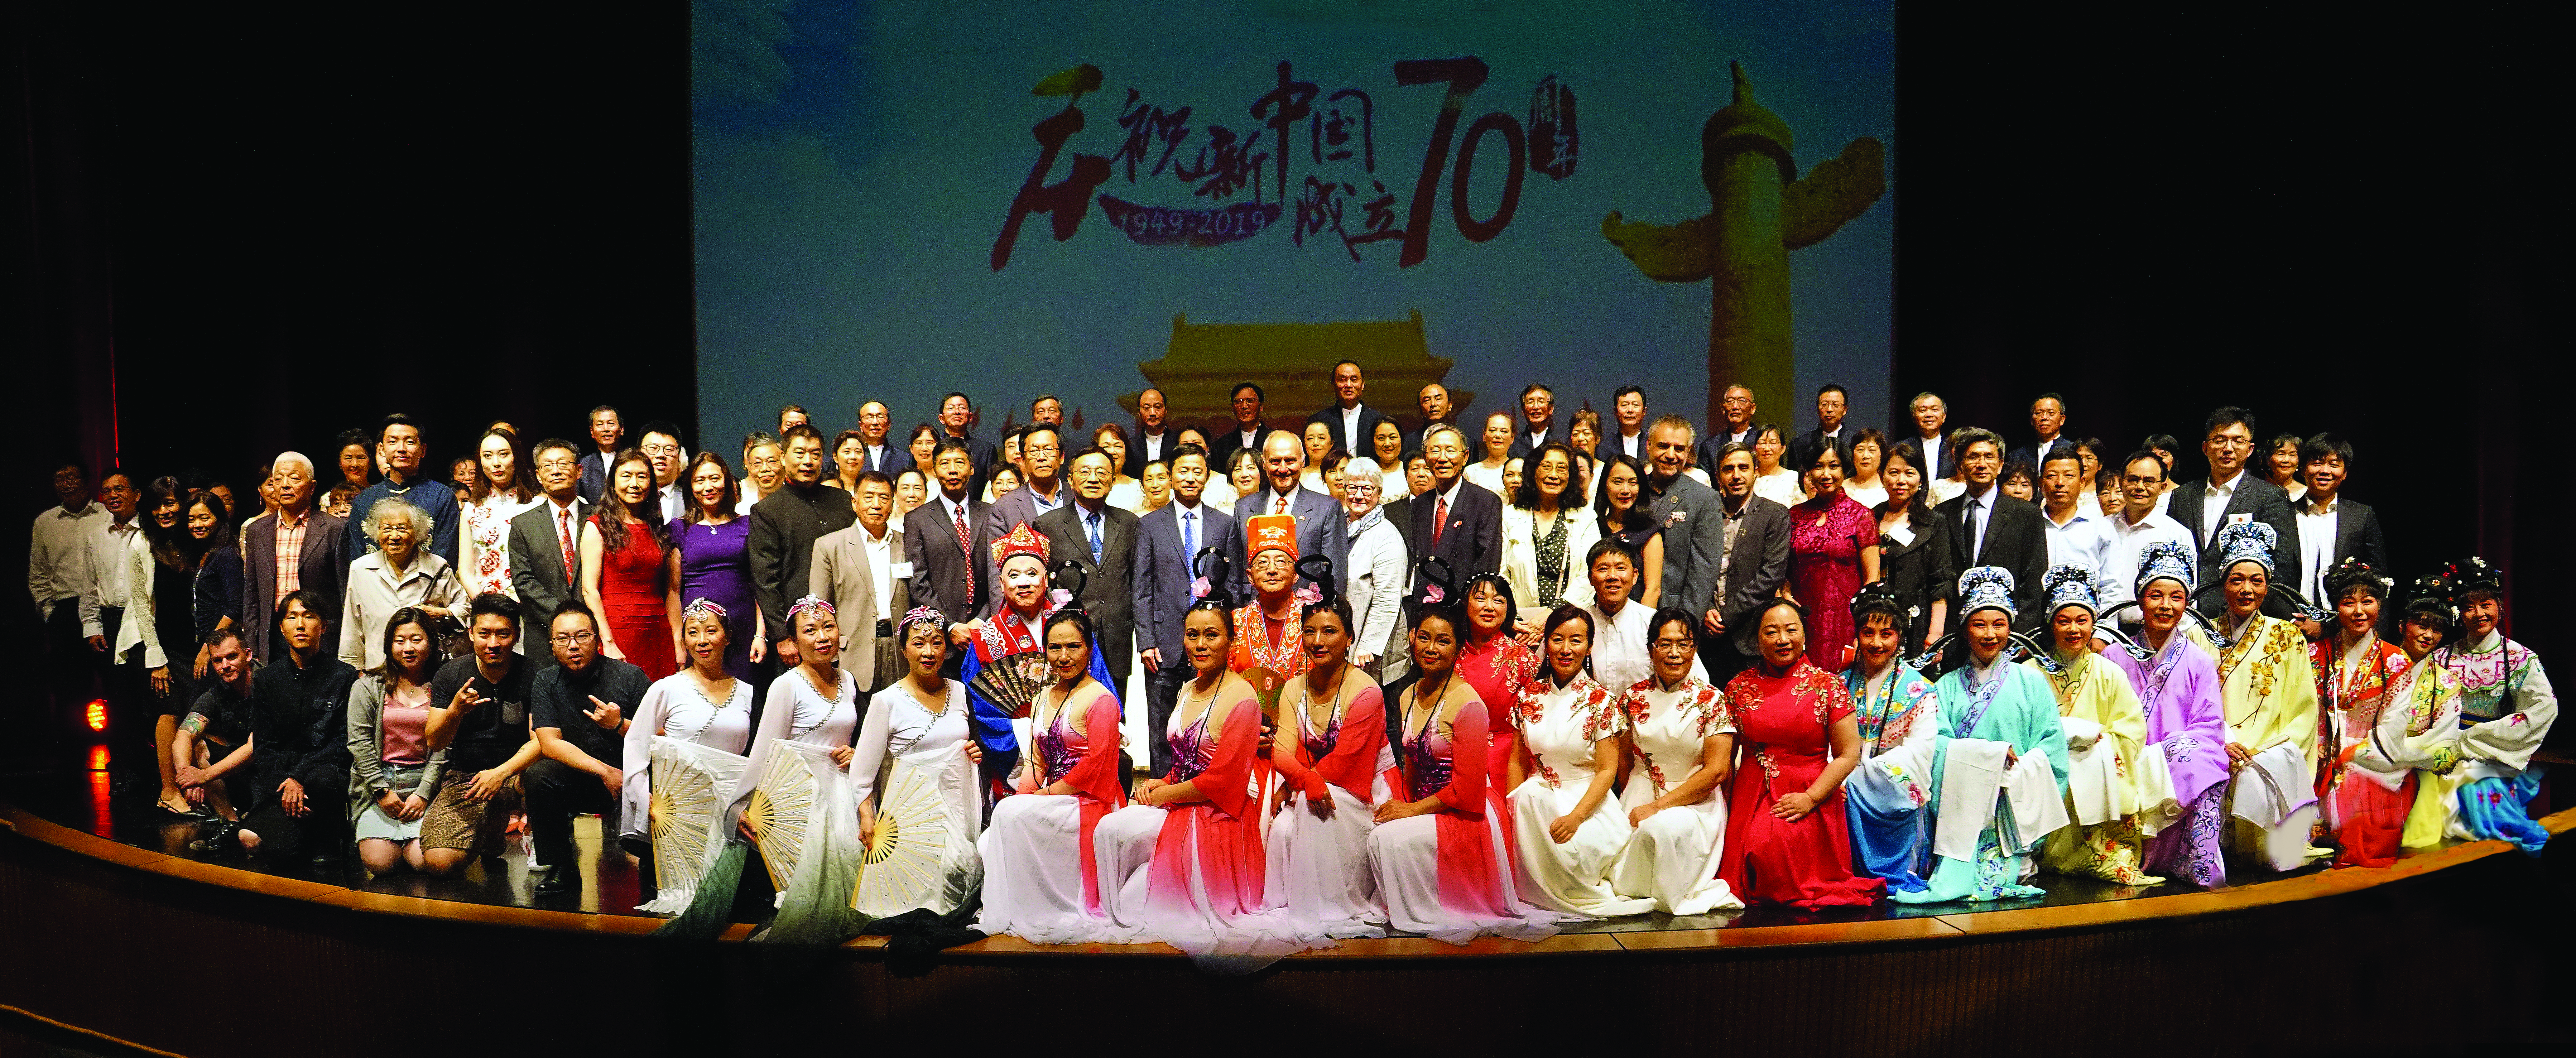 渥太华中华会馆等三十五社团联袂举办 庆祝中华人民共和国 成立七十周年晚会盛况空前